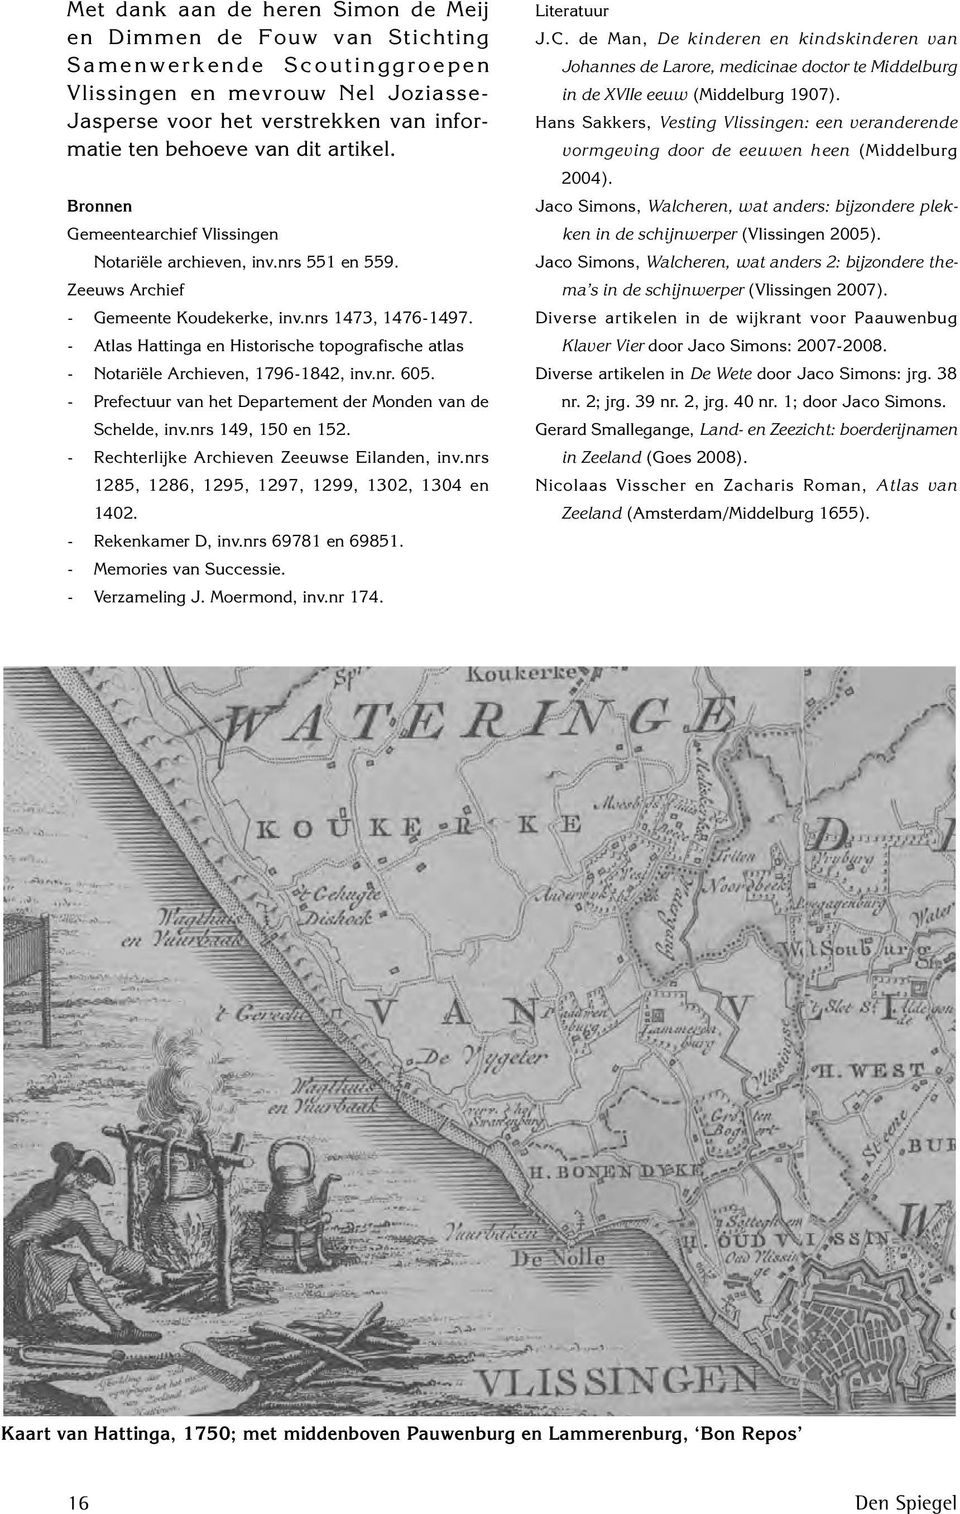 - Atlas Hattinga en Historische topografische atlas - Notariële Archieven, 1796-1842, inv.nr. 605. - Prefectuur van het Departement der Monden van de Schelde, inv.nrs 149, 150 en 152.